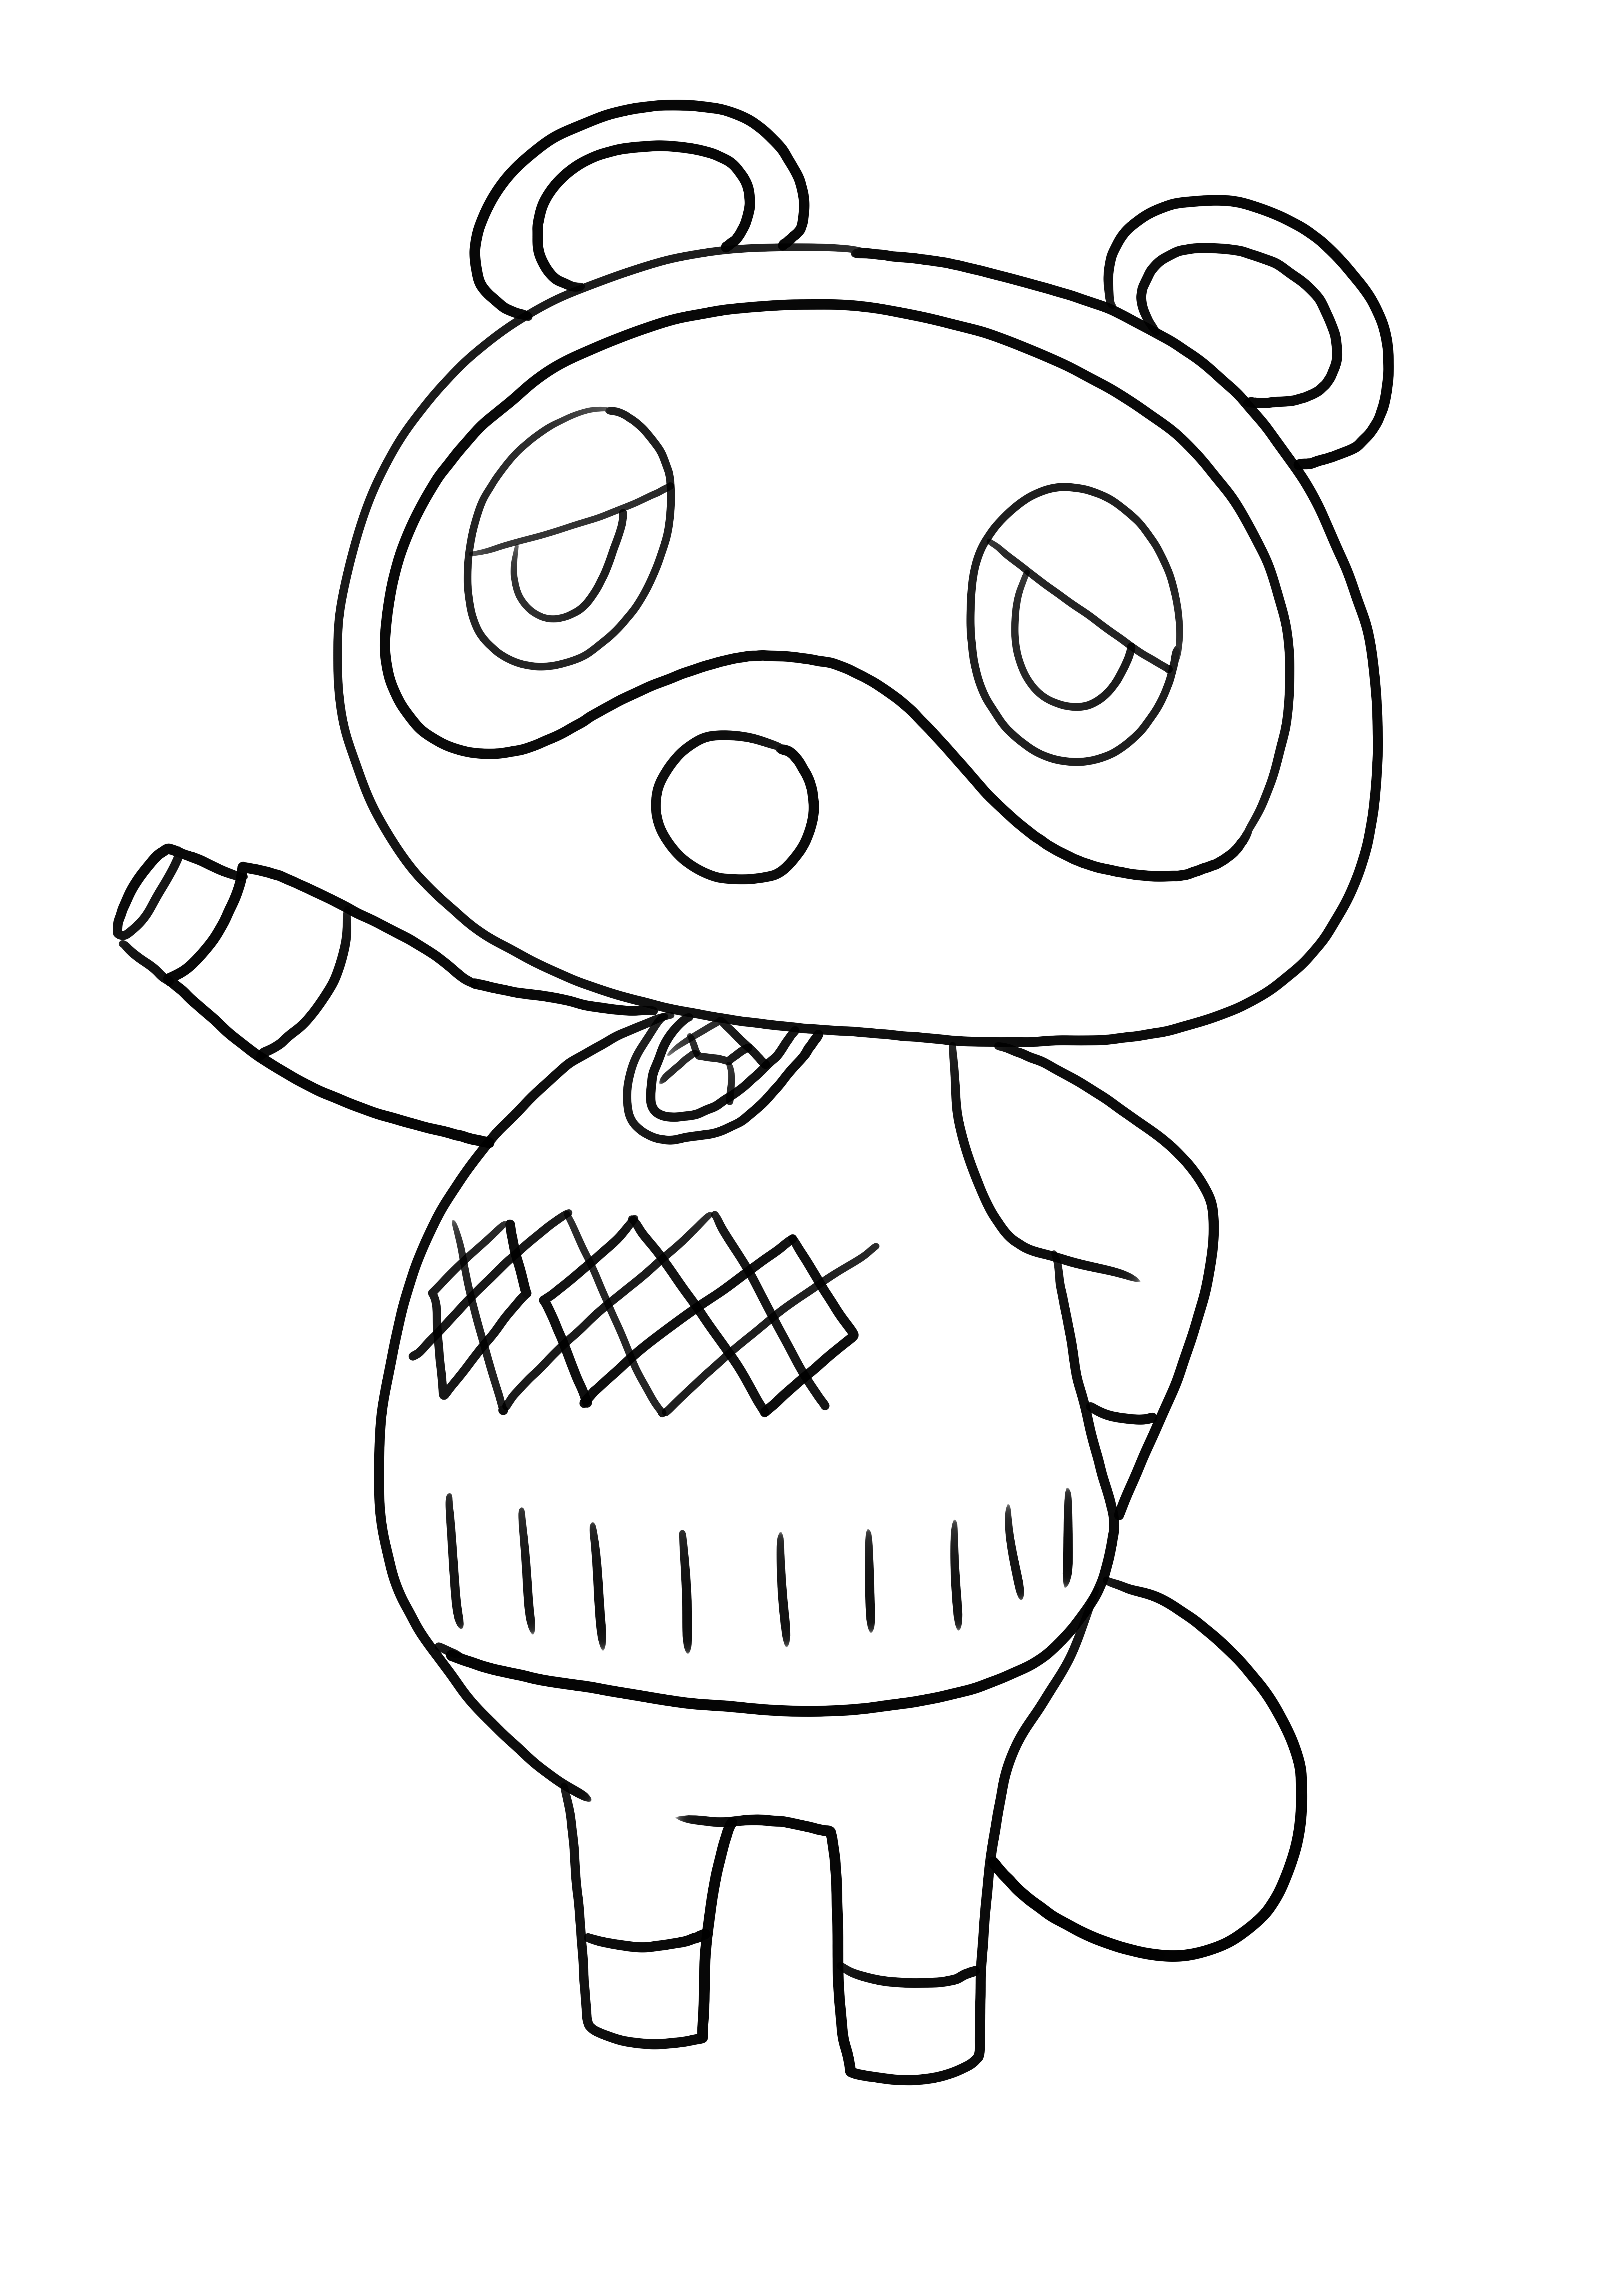 Desenho de Tom Nook de Animal Crossing para imprimir e colorir